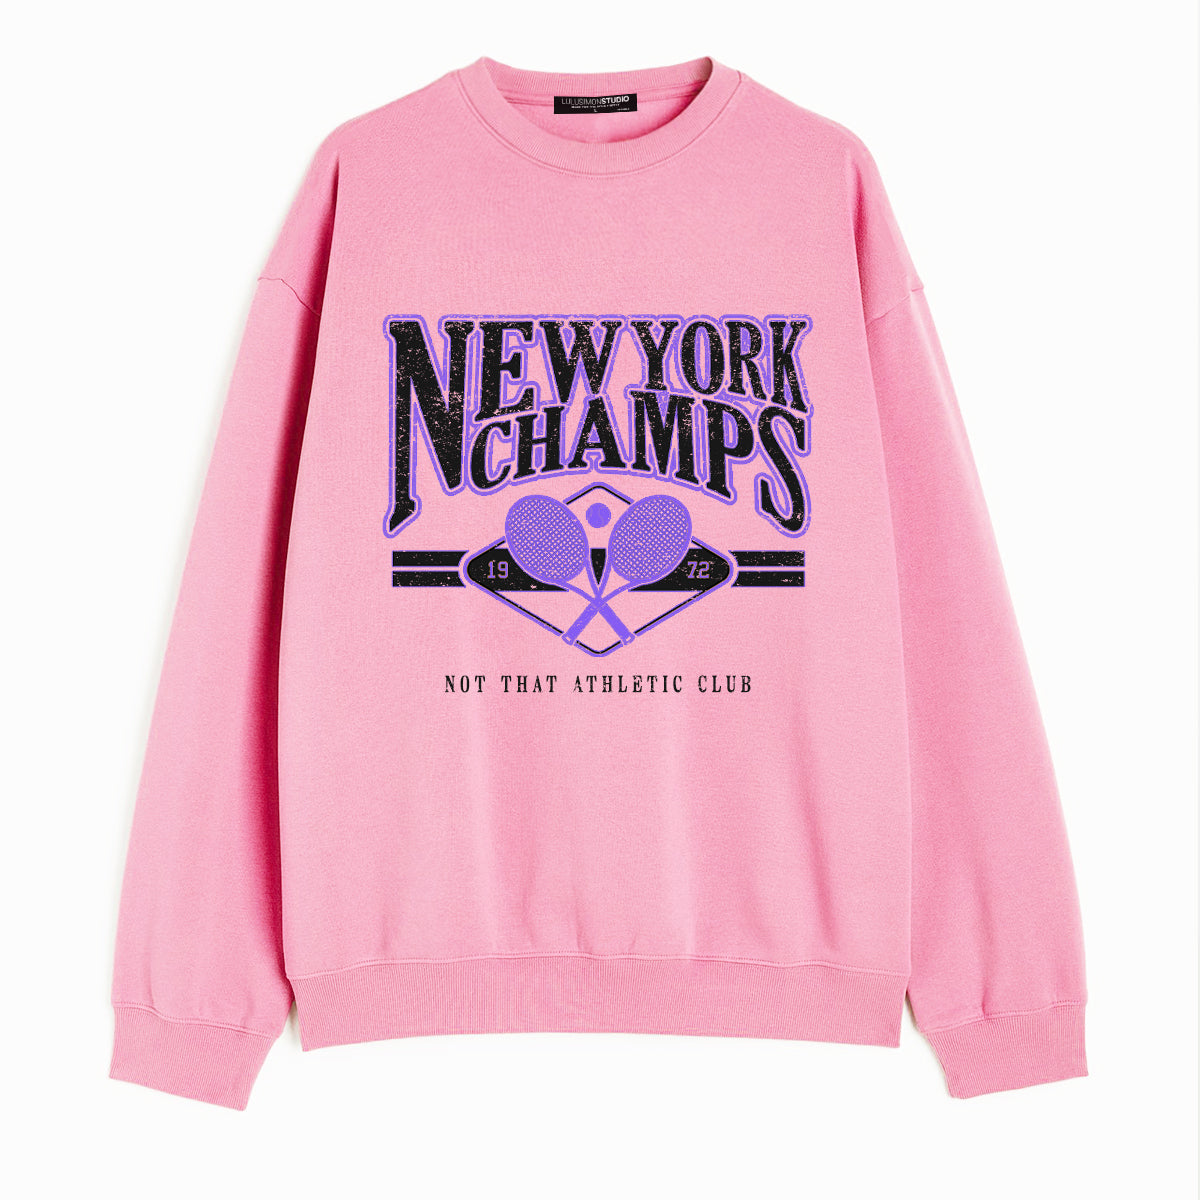 New York Champs Sweatshirt